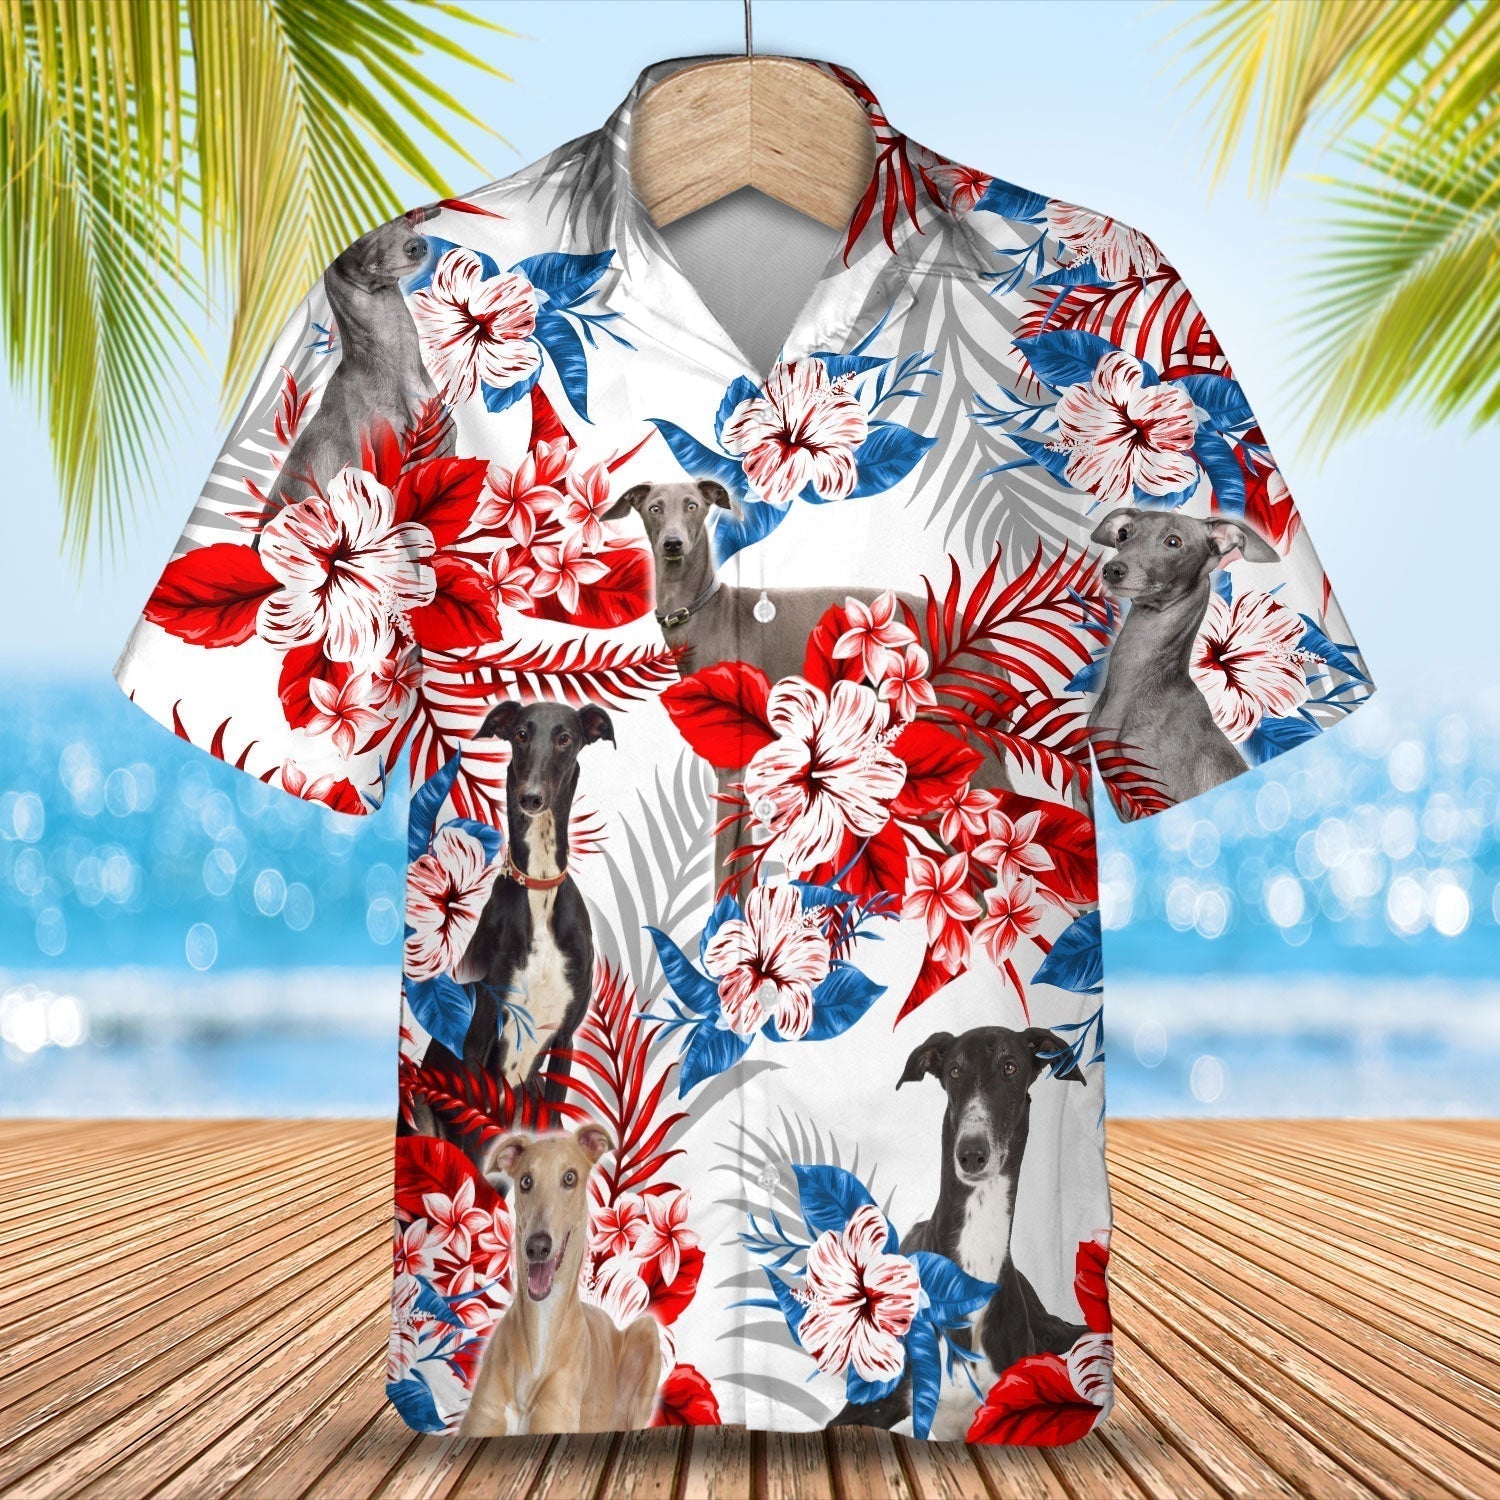 Greyhound Hawaiian Shirt - Gift for Summer/ Summer aloha shirt/ Hawaiian shirt for Men and women